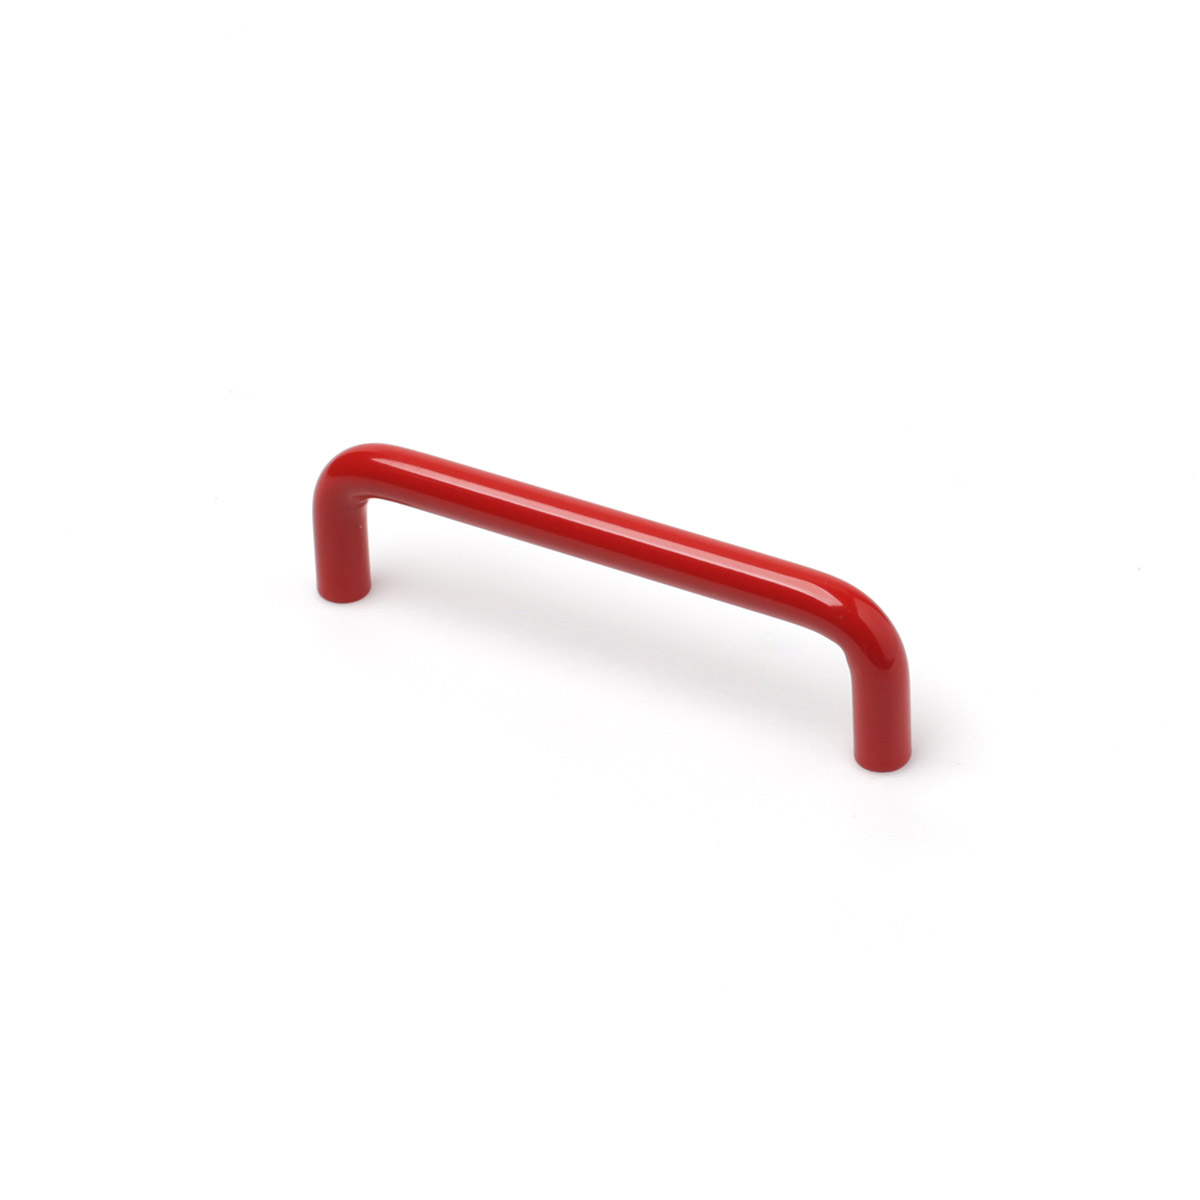 Asa de hierro con acabado rojo, dimensiones:106x10x30mm y entrepuntos:96mm